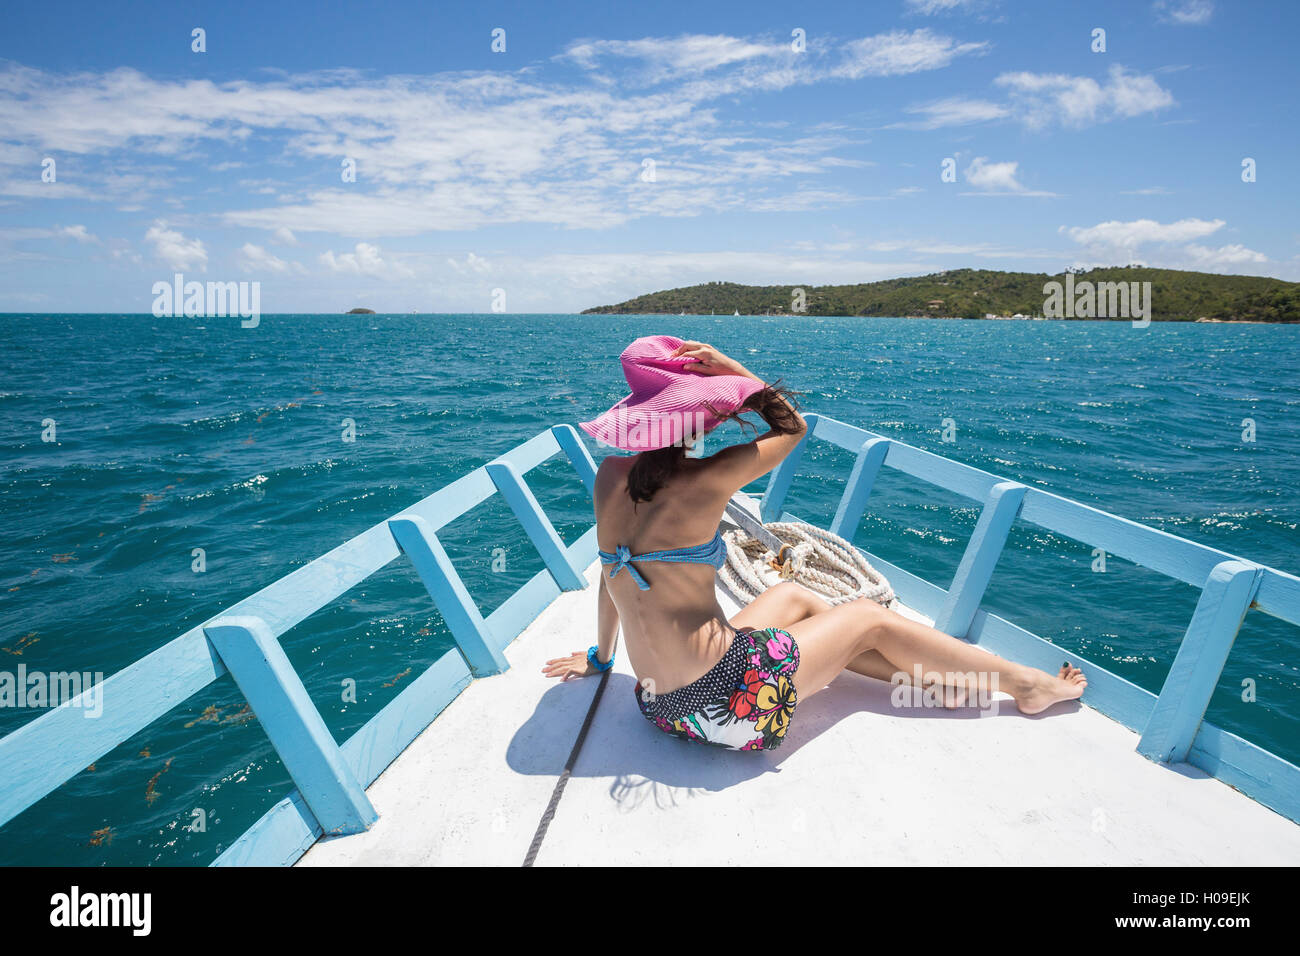 Un touriste admire les couleurs de la mer des Caraïbes à partir d'un bateau, l'île Green, Antigua-et-Barbuda, Antilles, îles sous le vent Banque D'Images